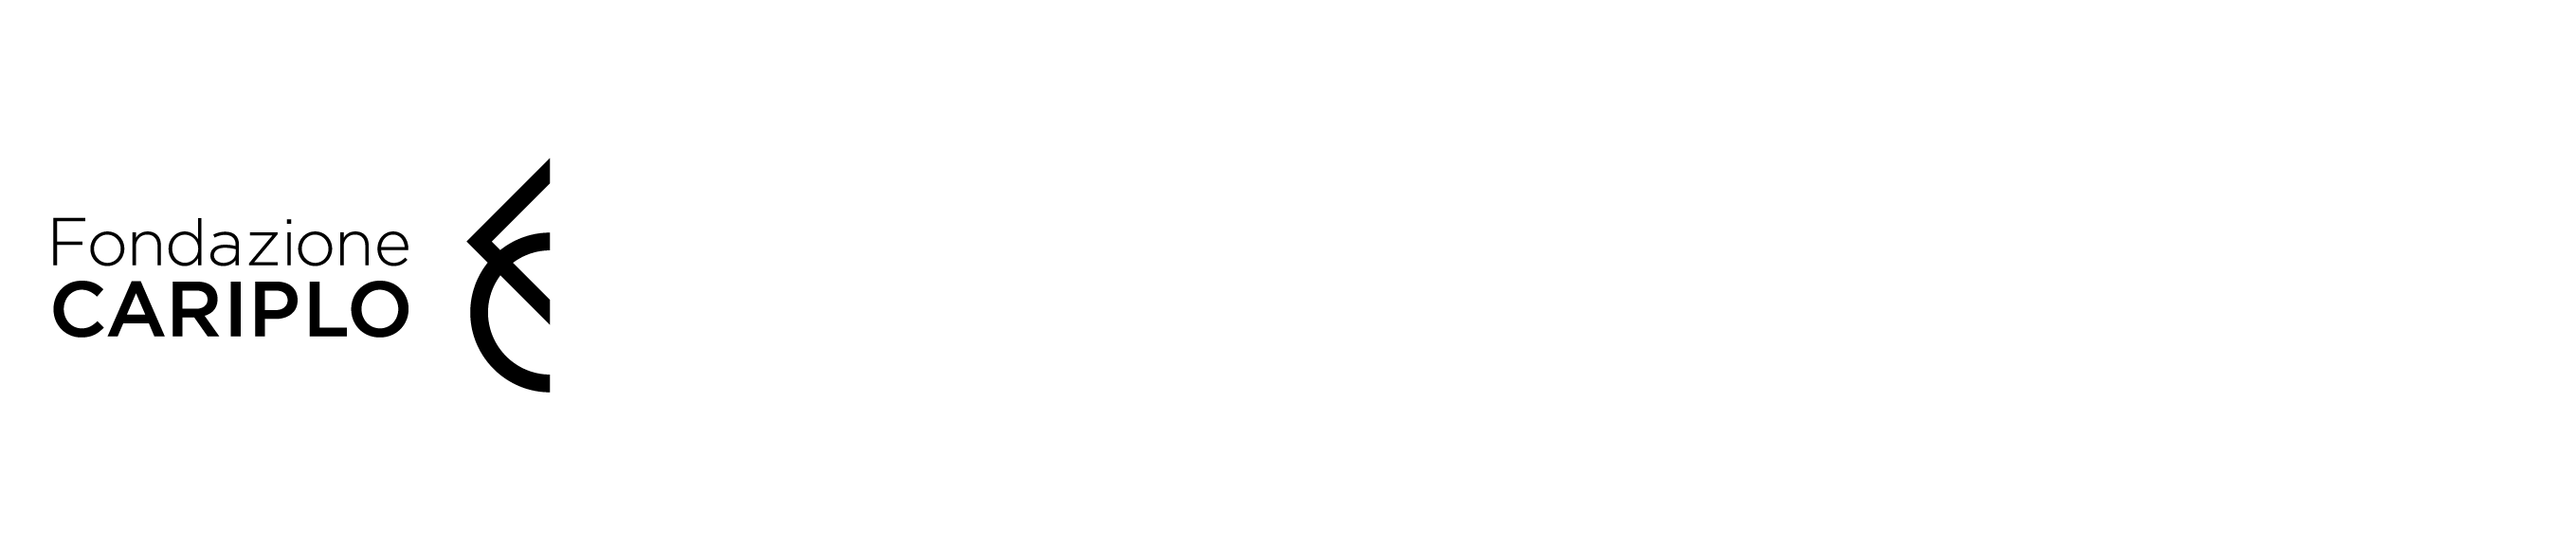 Fondazione CARIPLO logo